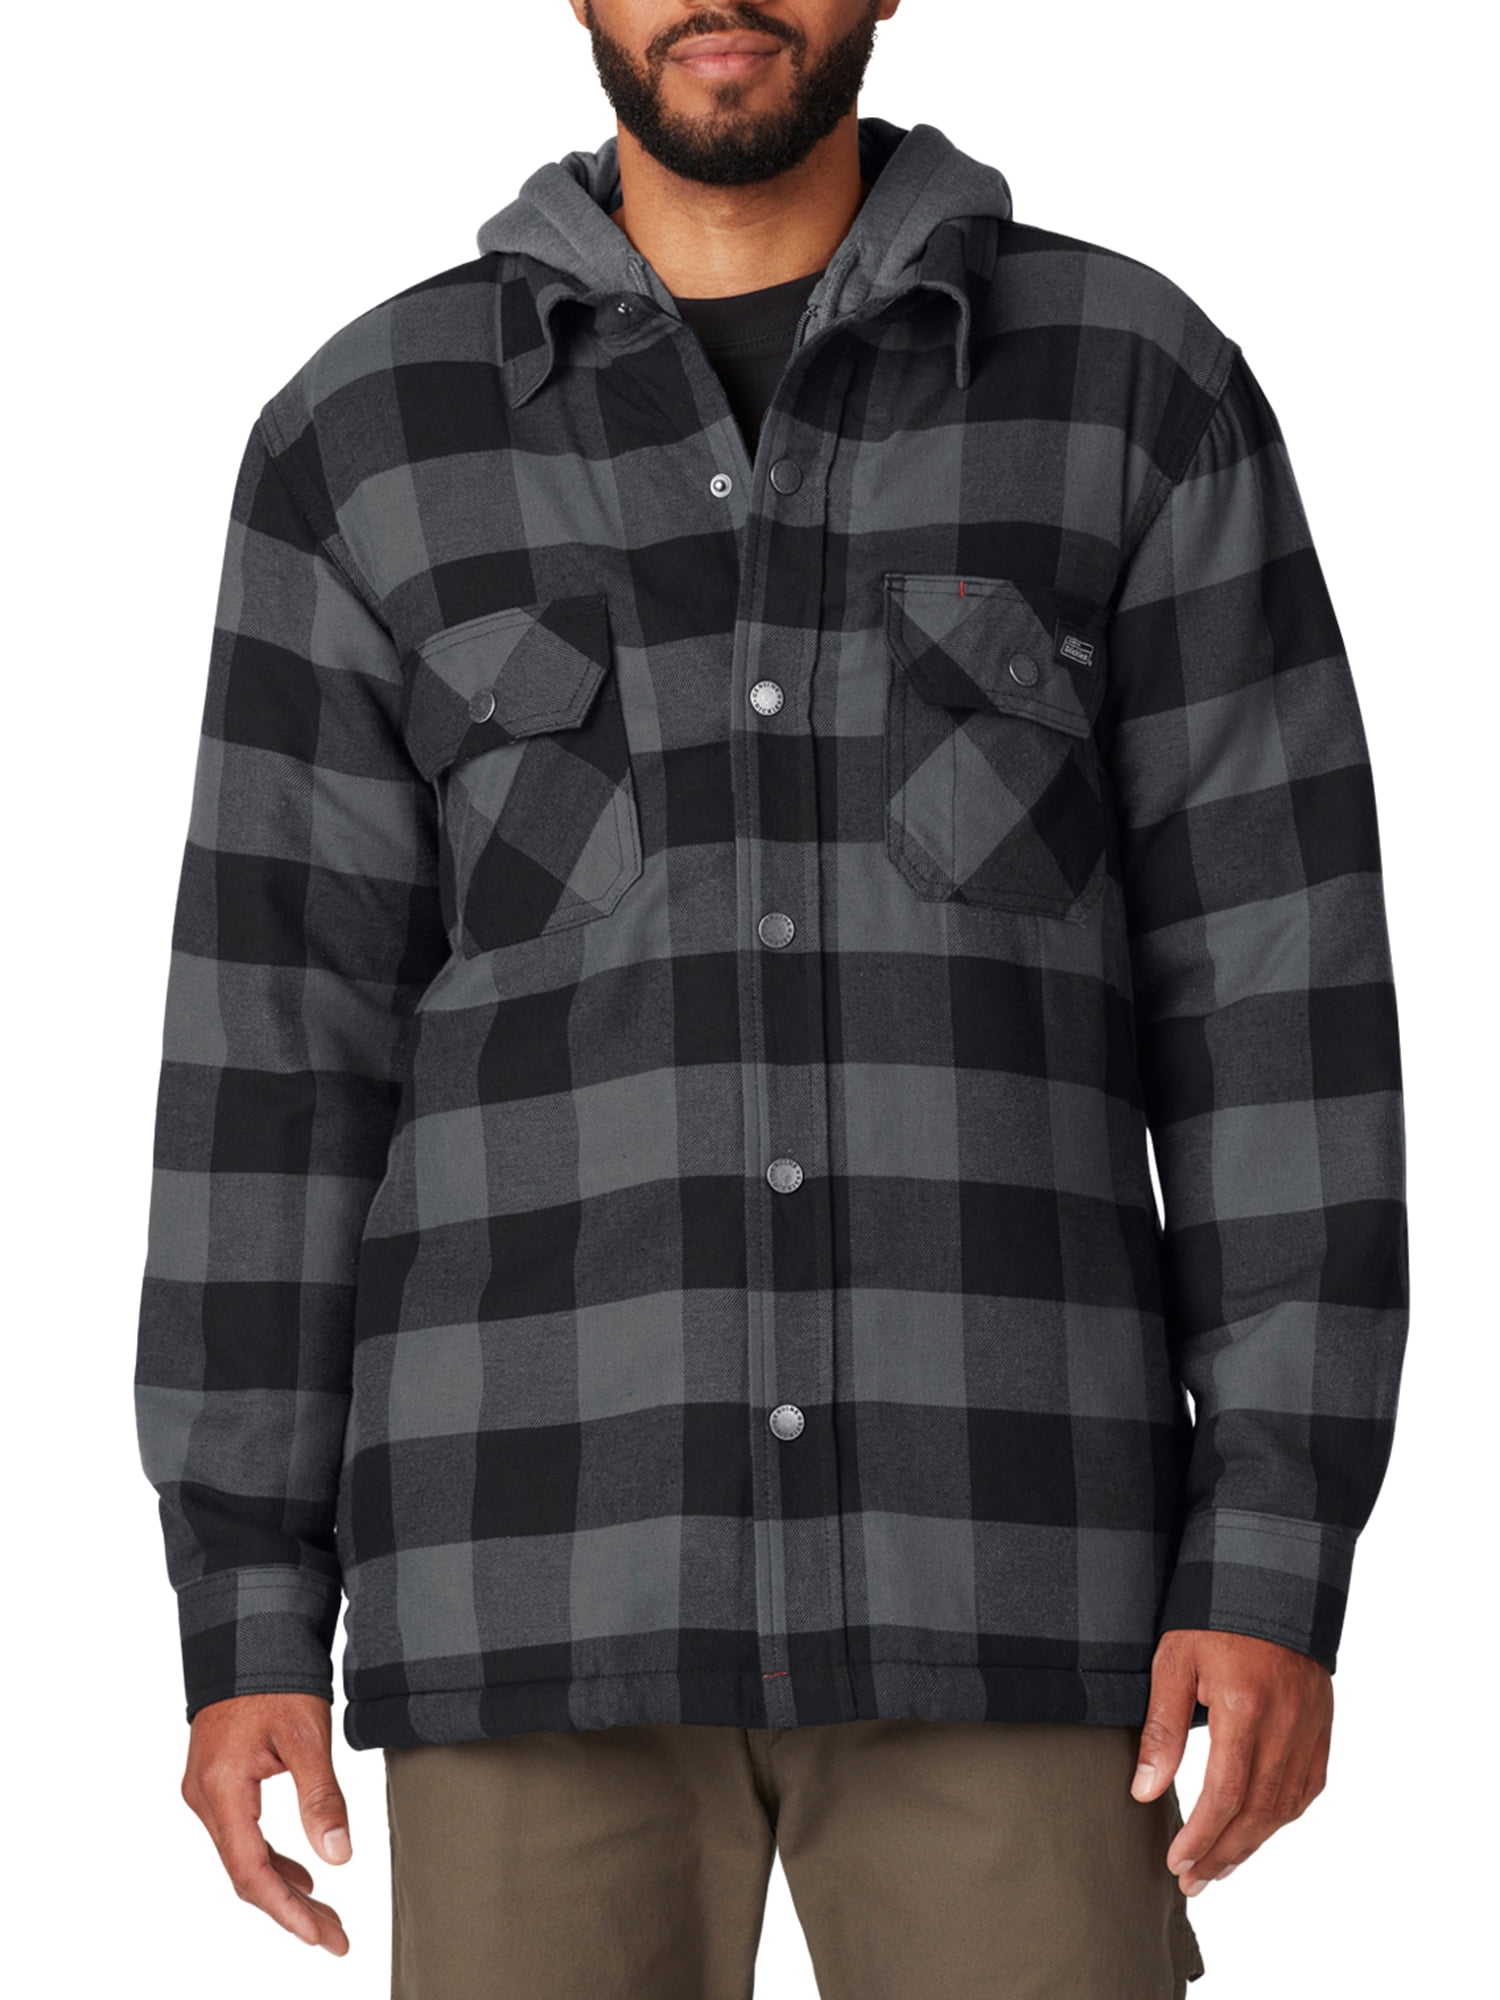 Genuine Dickies Men's Sherpa Lined Hooded Shirt Jacket   Walmart.com